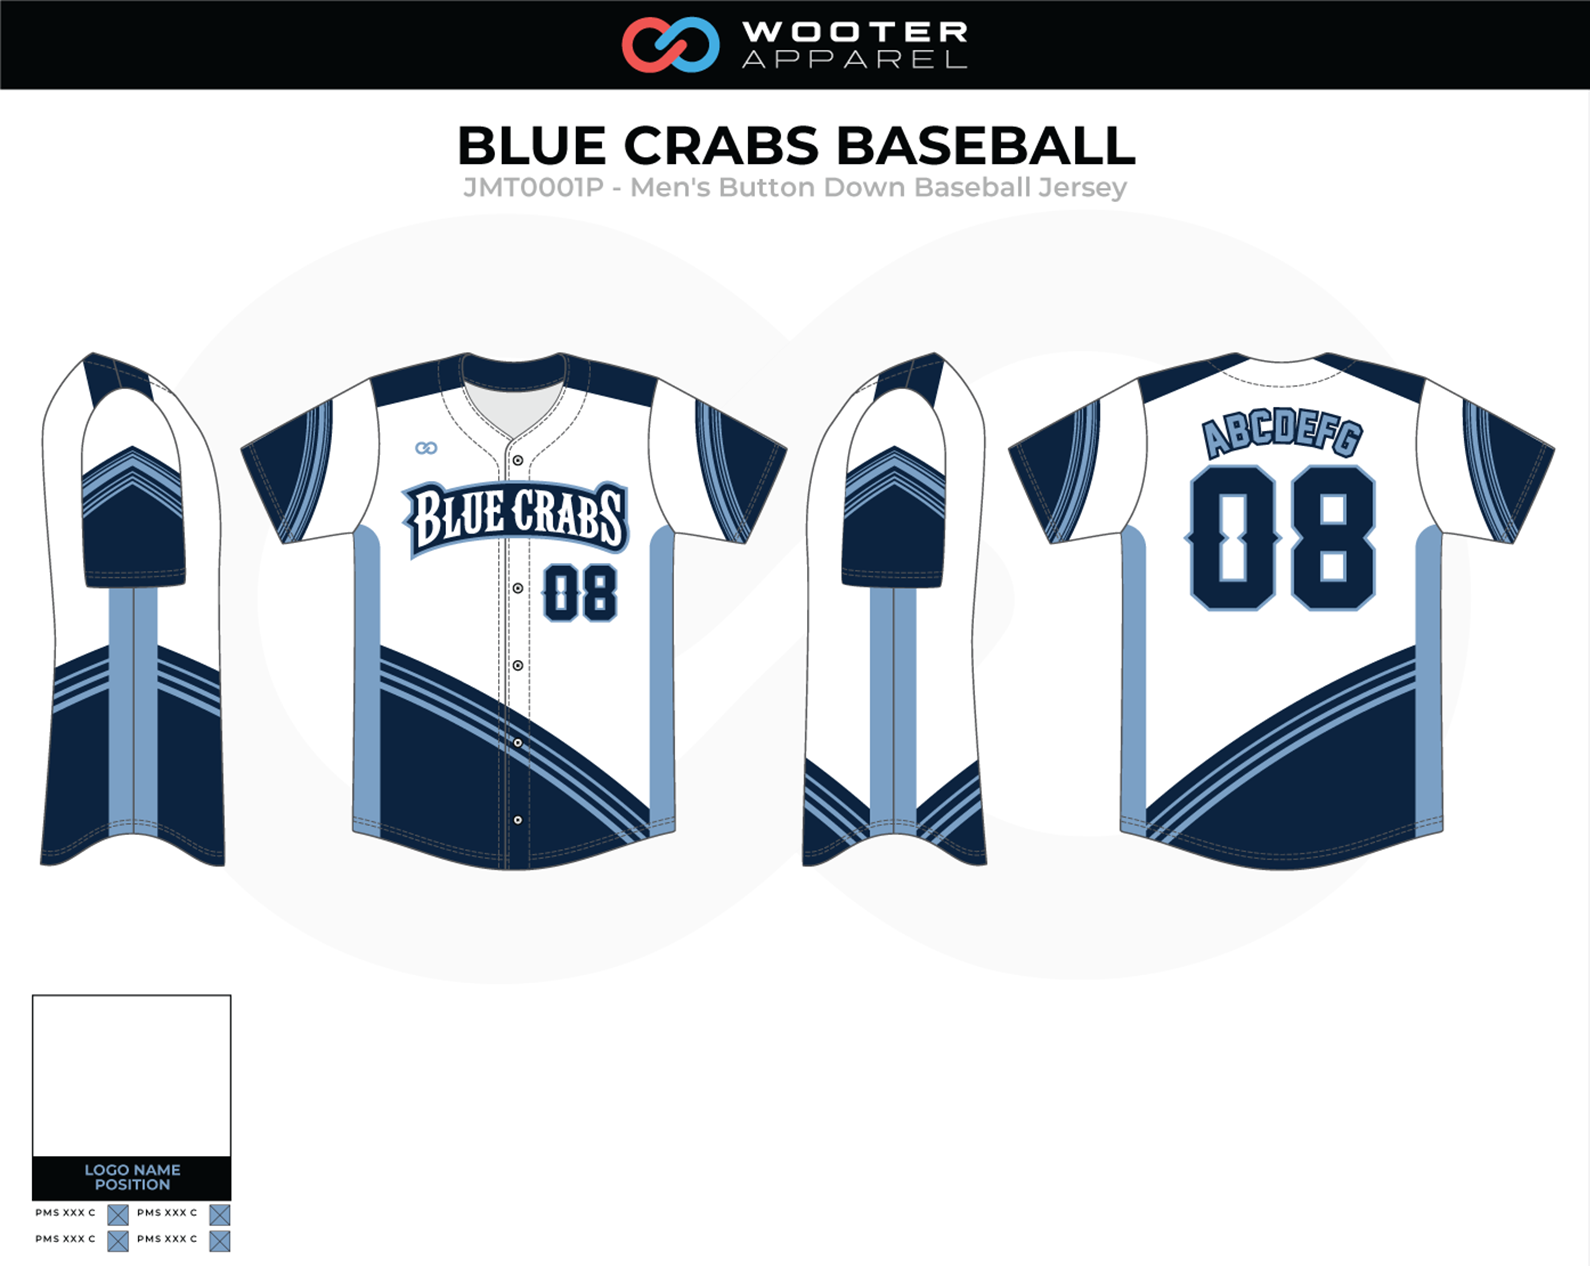 create baseball uniforms